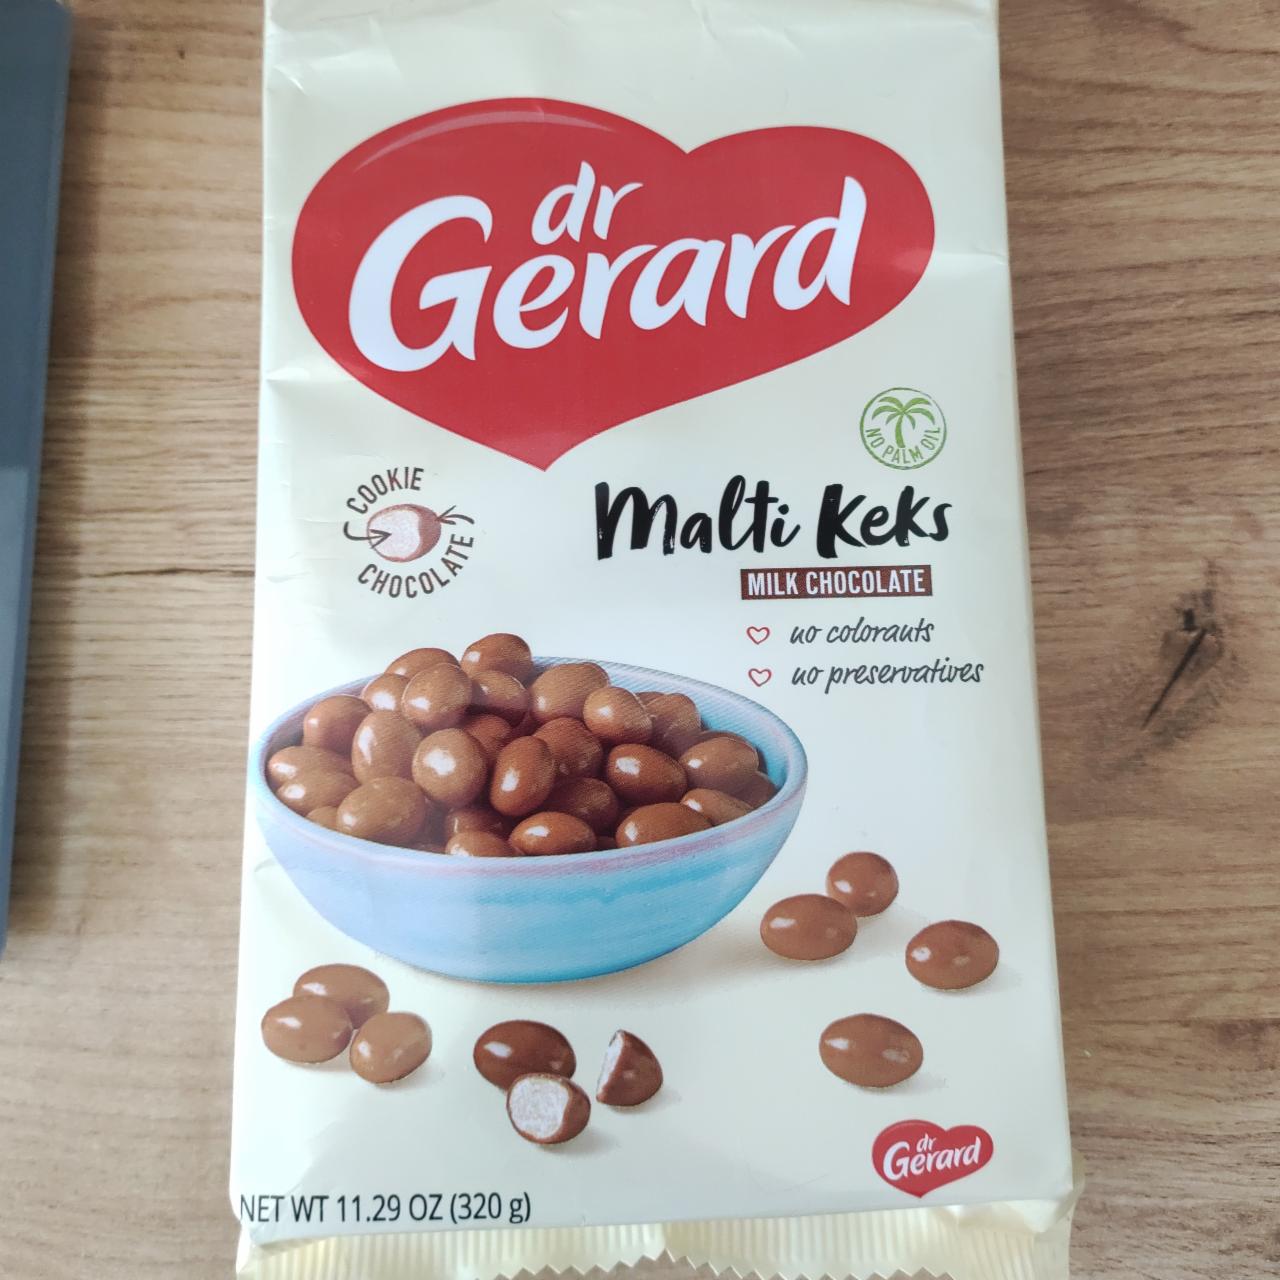 Фото - Кульки з печива в молочному шоколаді Malti Keks Milk Chocolate Dr Gerard